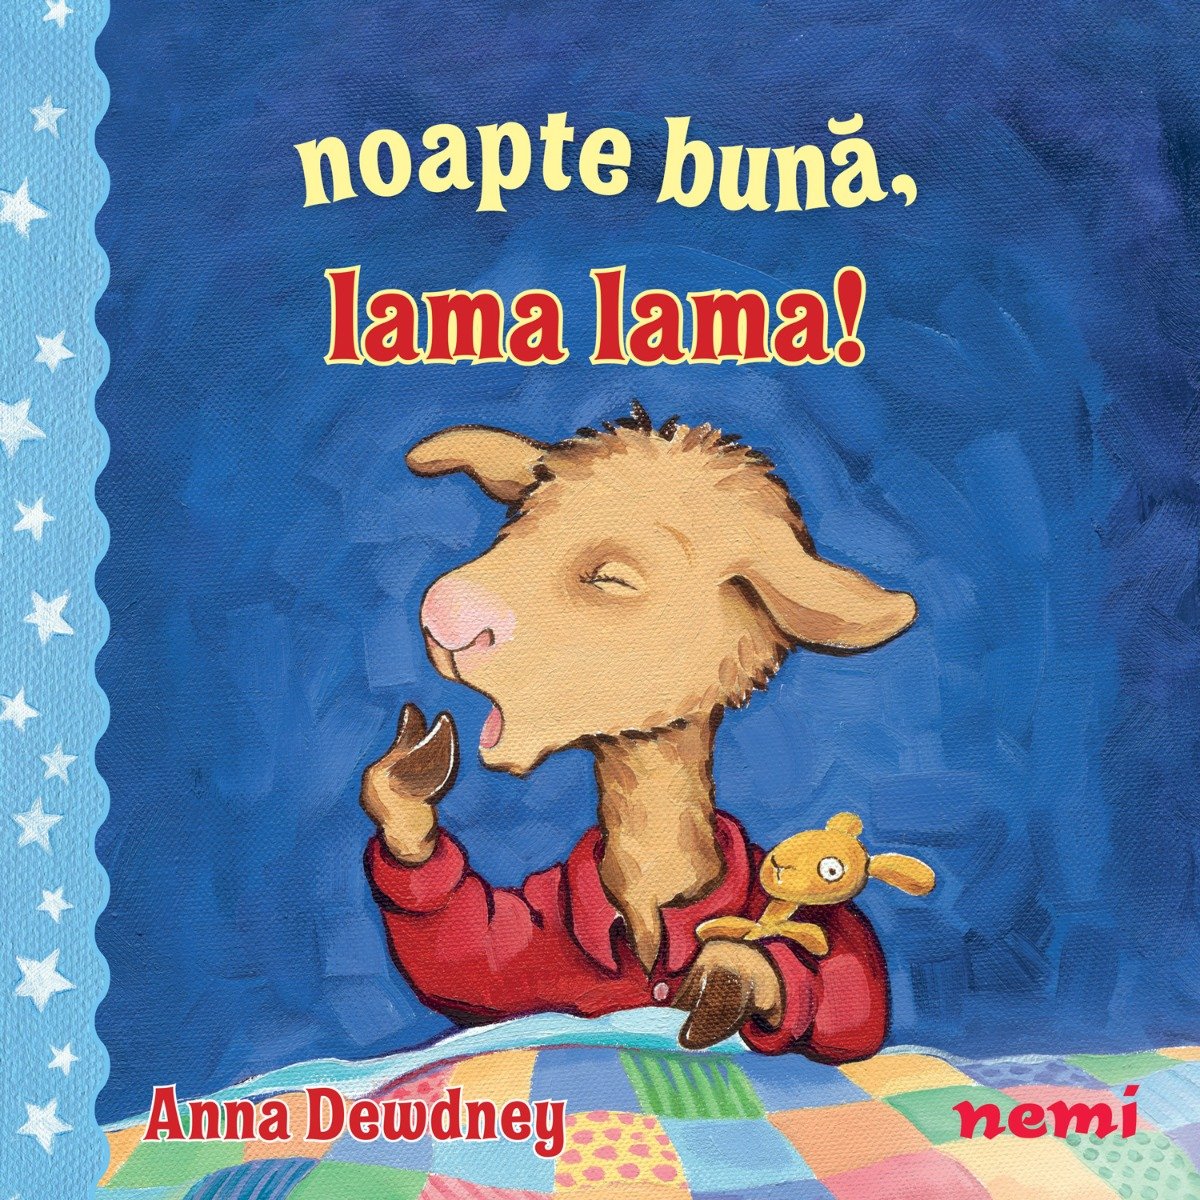 Noapte buna, Lama lama!, Anna Dewdney